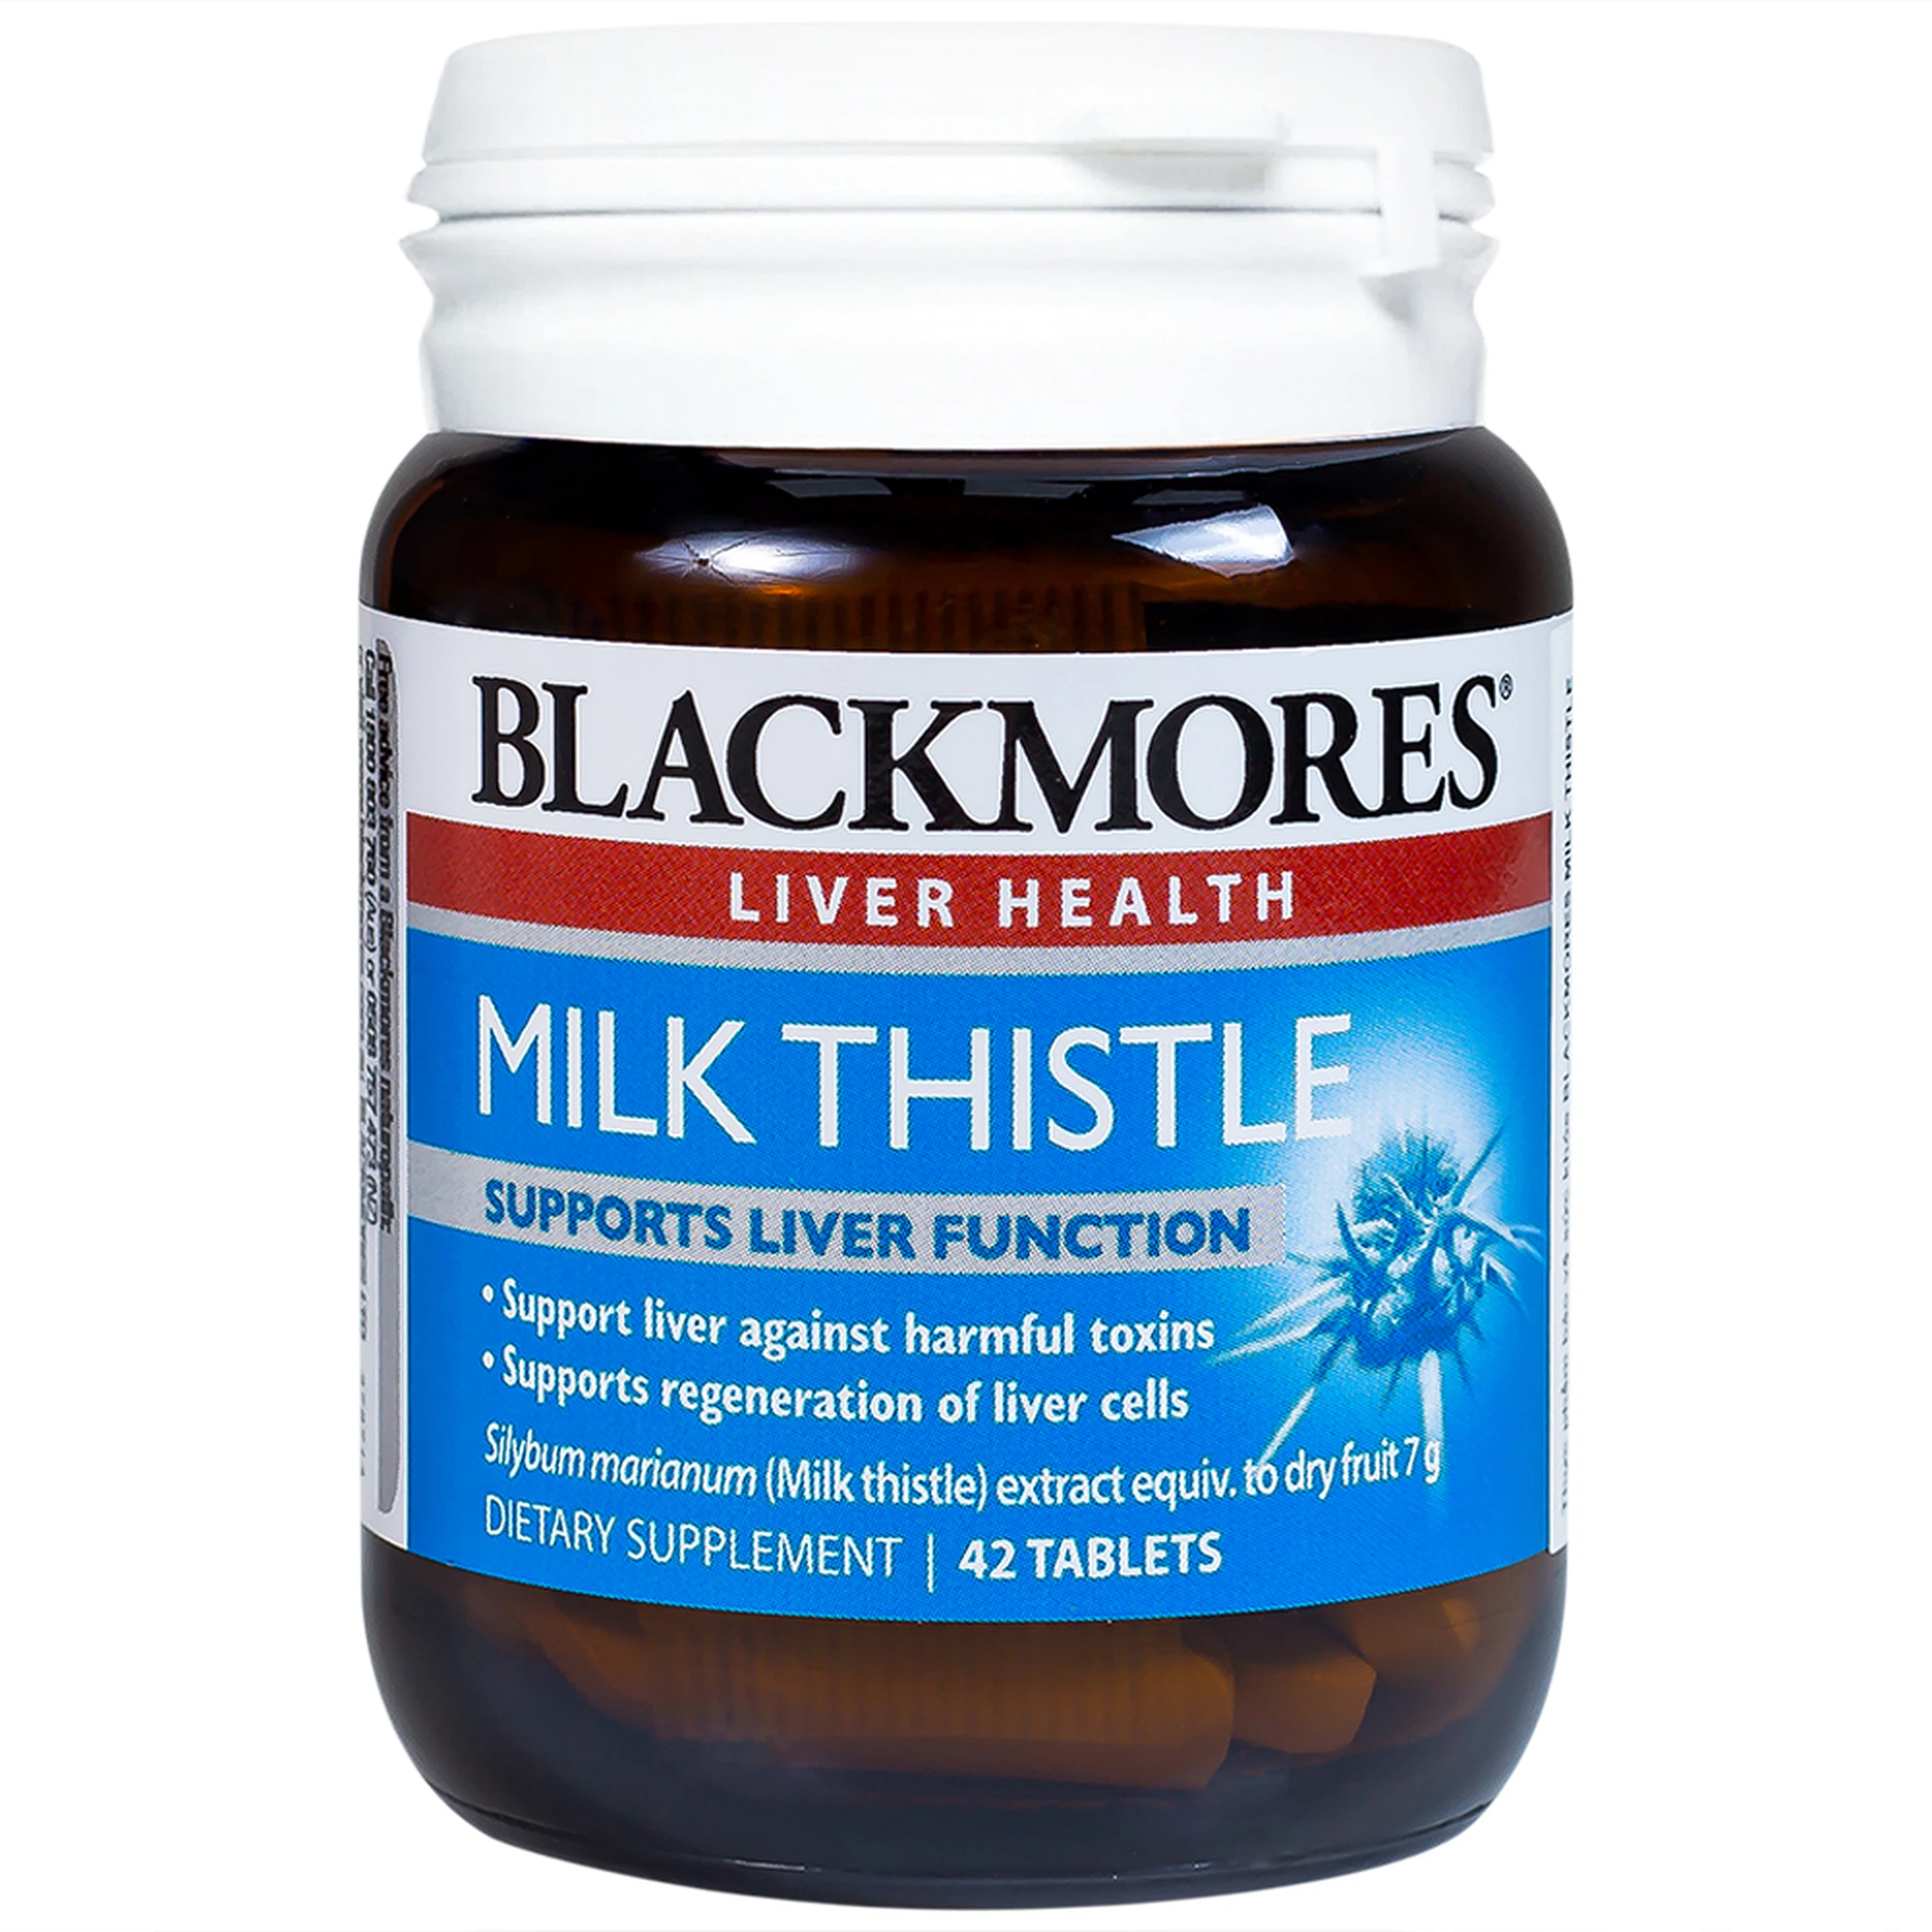 Viên uống Blackmores Milk Thistle hỗ trợ quá trình phục hồi tế bào gan, bảo vệ gan (42 viên)